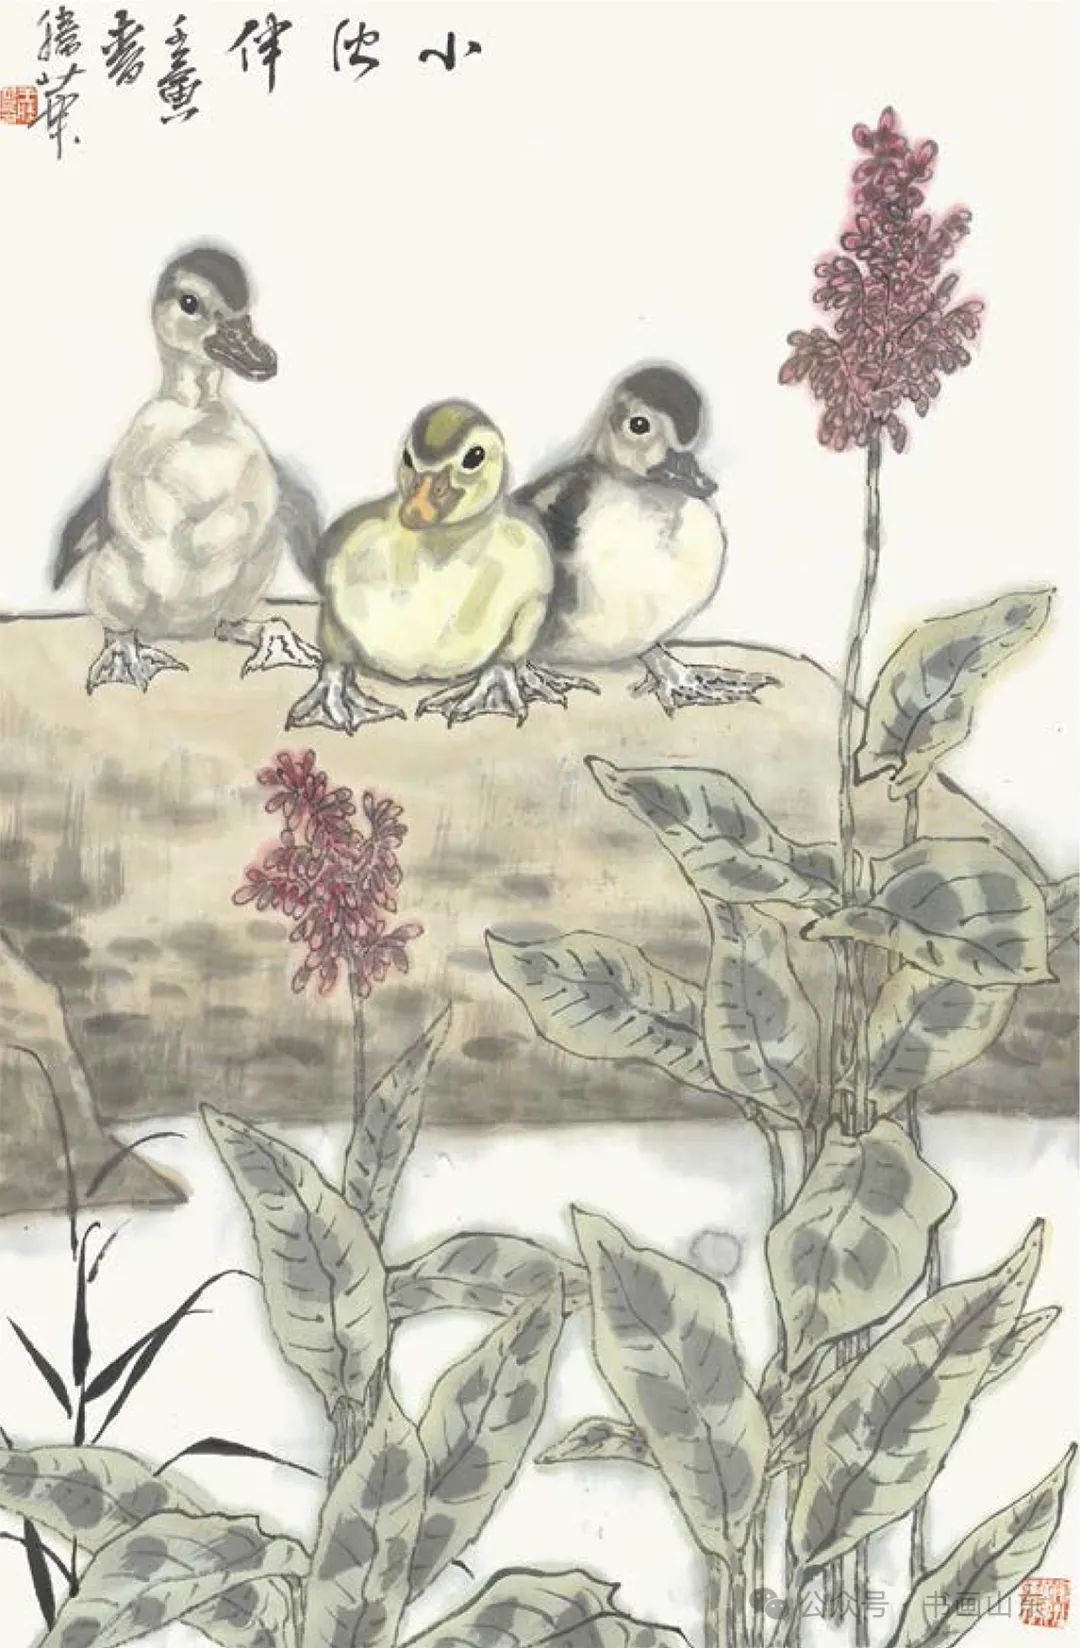 王胜华花鸟画丨面对自然的交流，自出机杼的创造